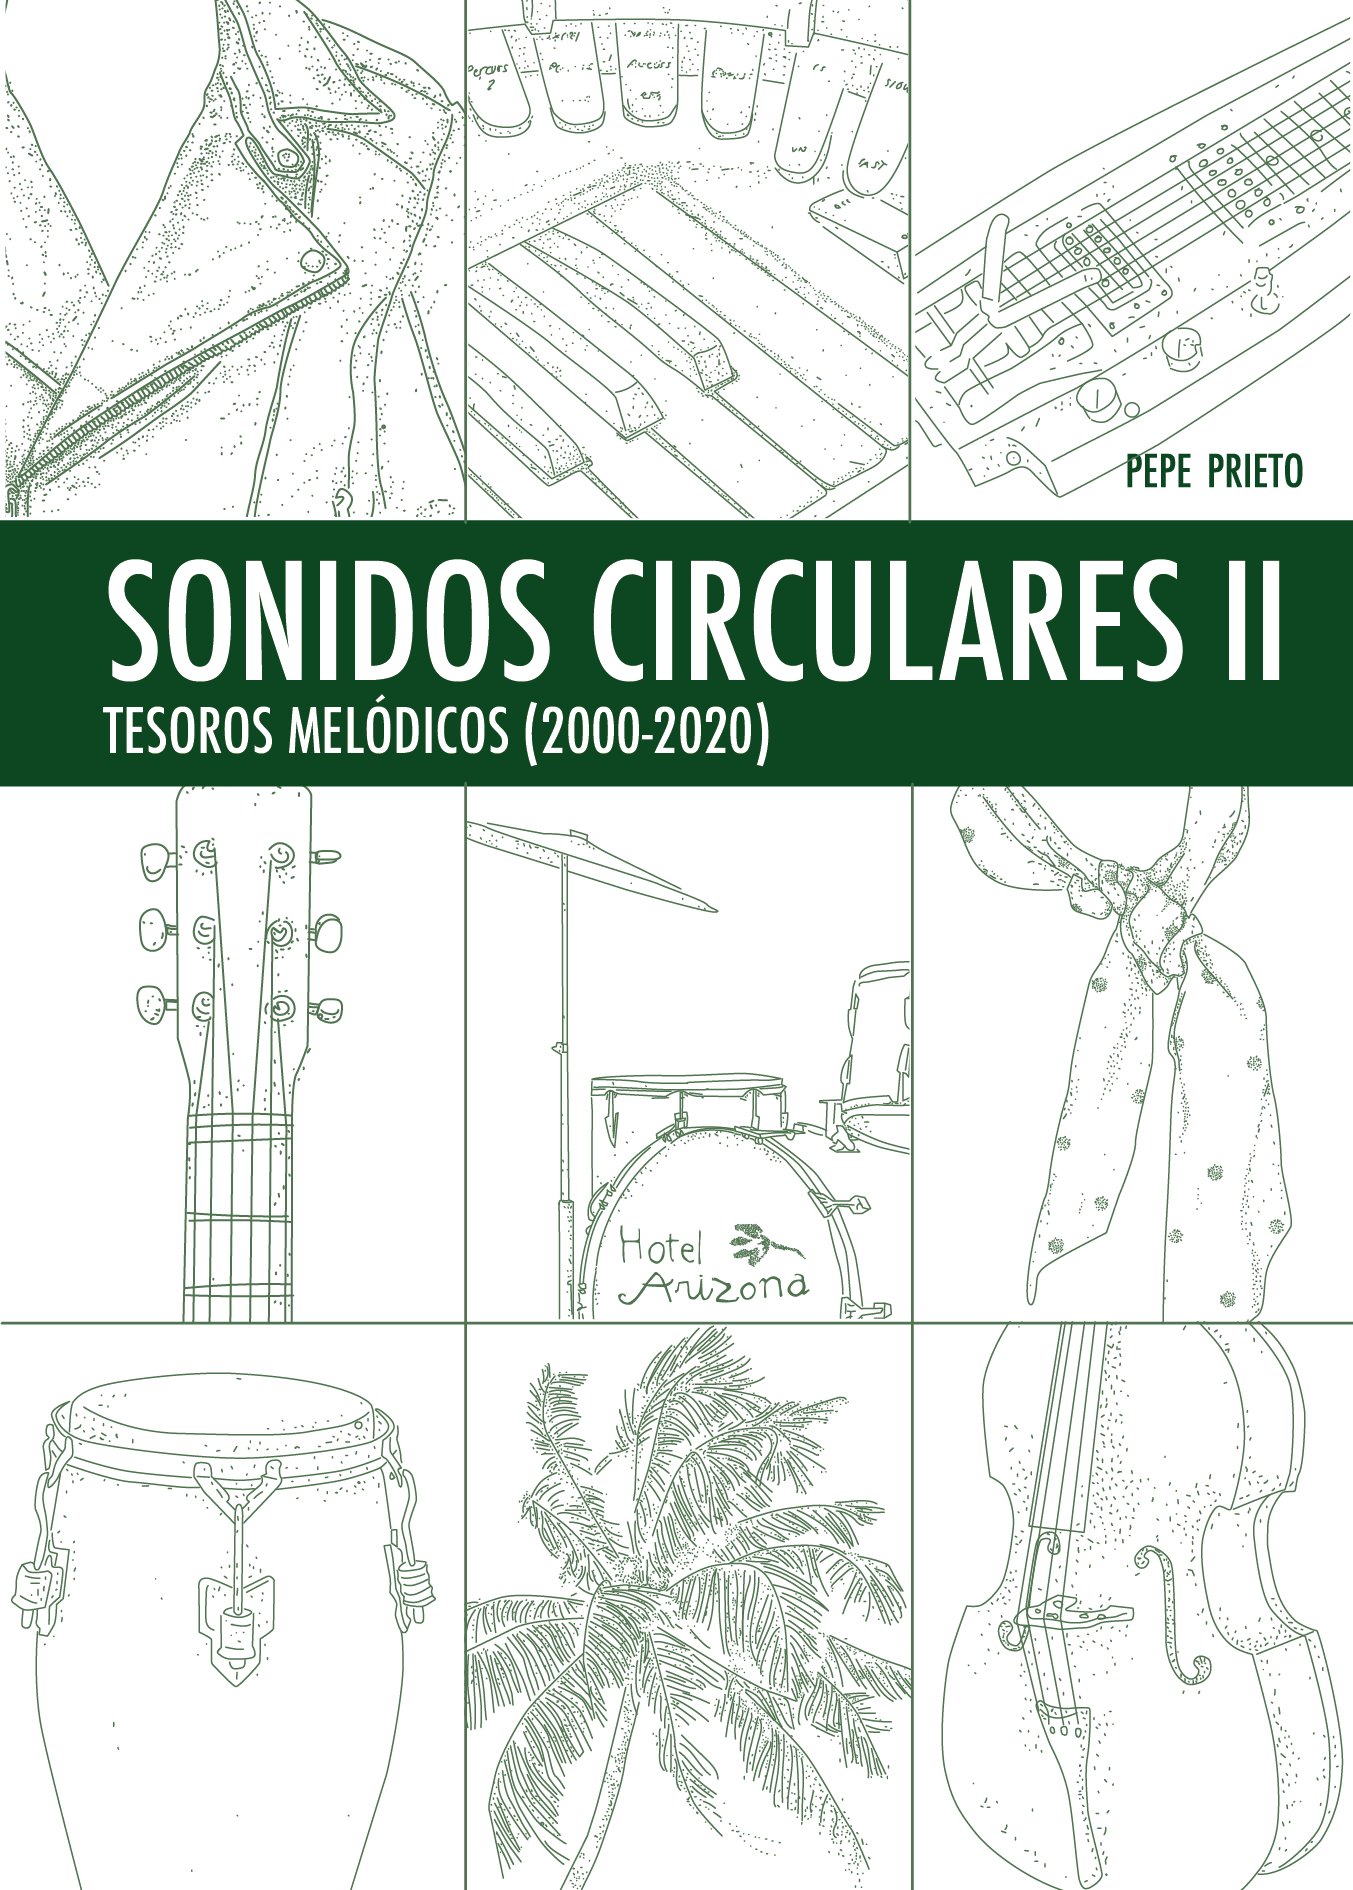 Image of SONIDOS CIRCULARES II en formato PDF.